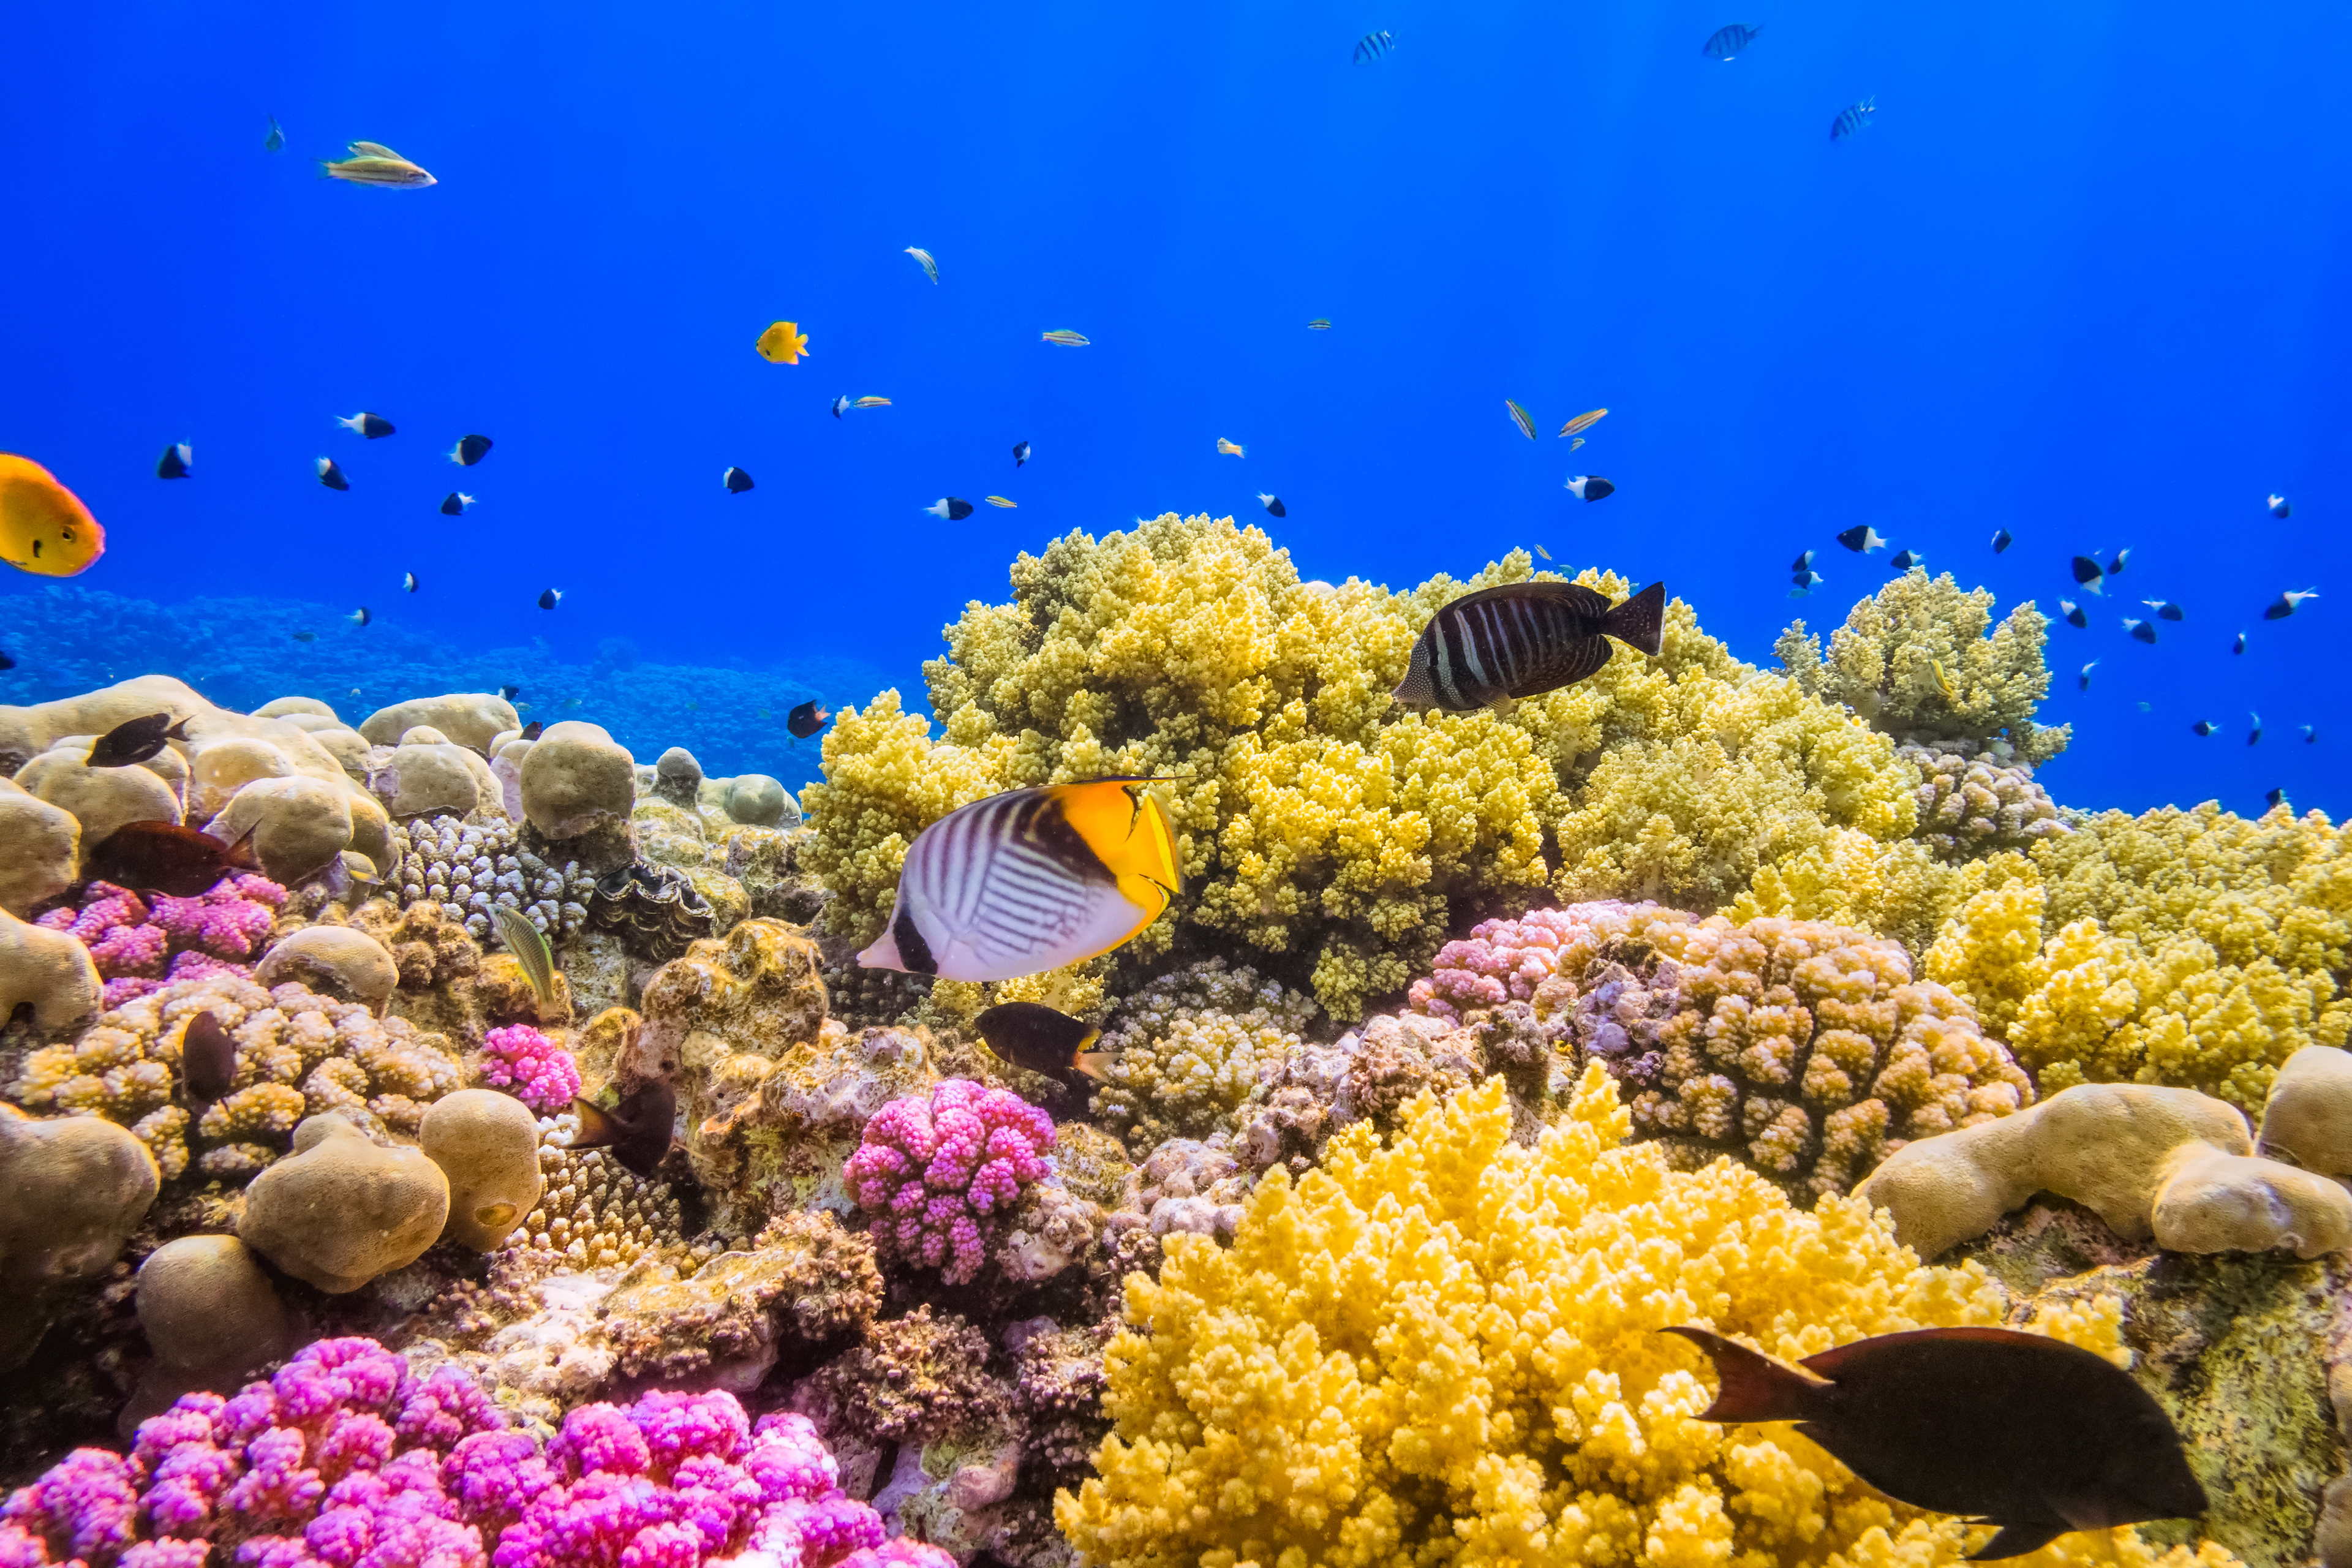 Coral video. Коралловые рифы красного моря. Риф в Египте Шарм-Эль-Шейх. Коралловые рифы красного моря в Египте. Подводный риф Шарм-Эль-Шейх.